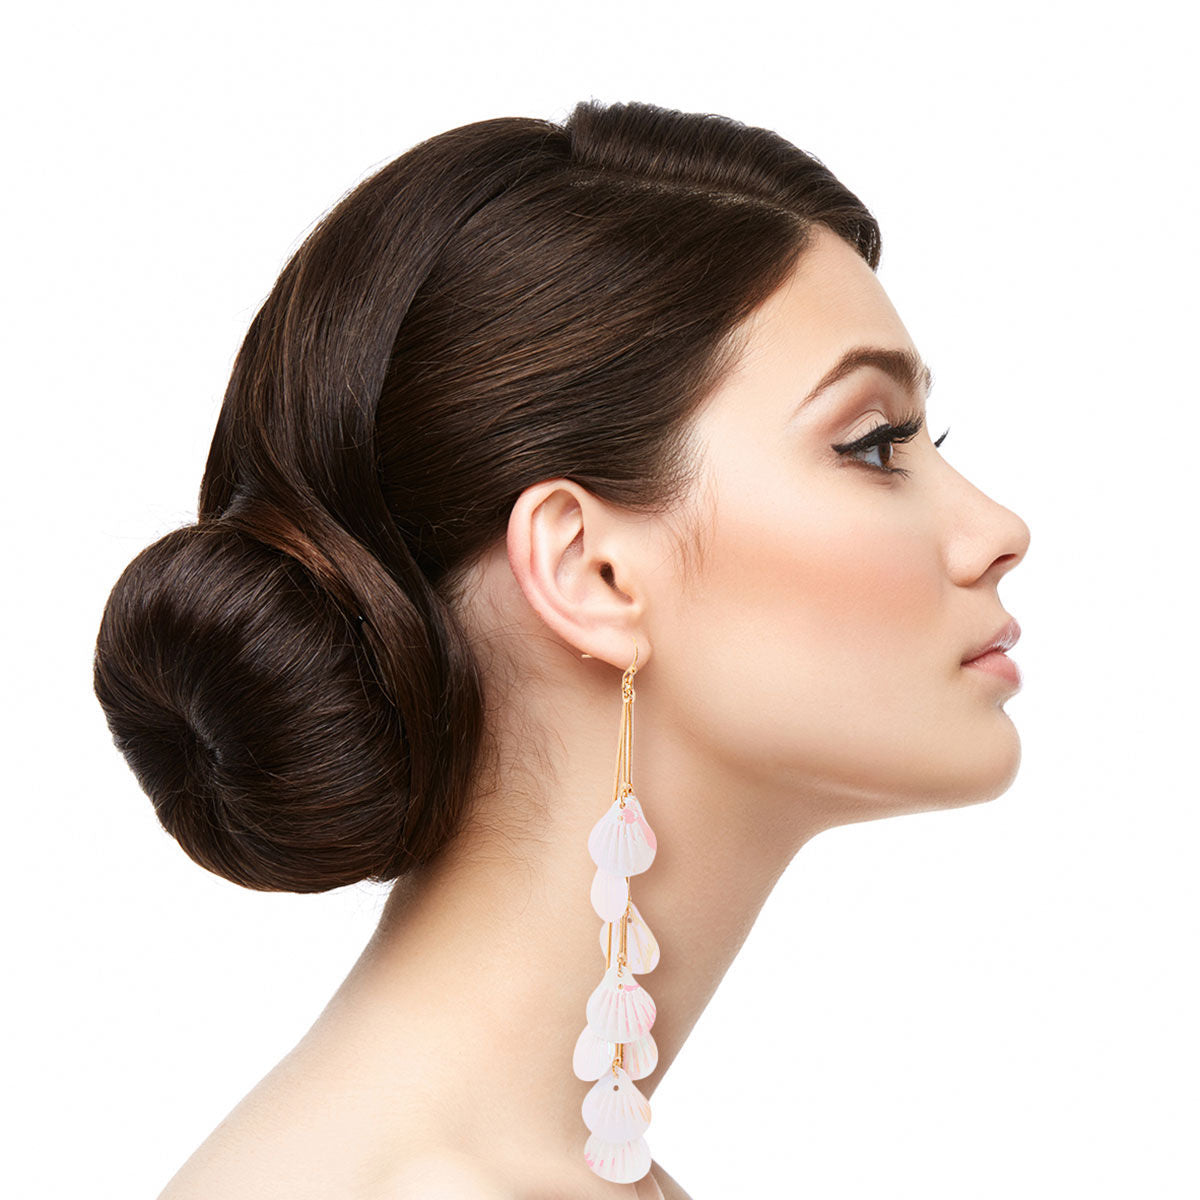 White Irridescent Shell Earrings